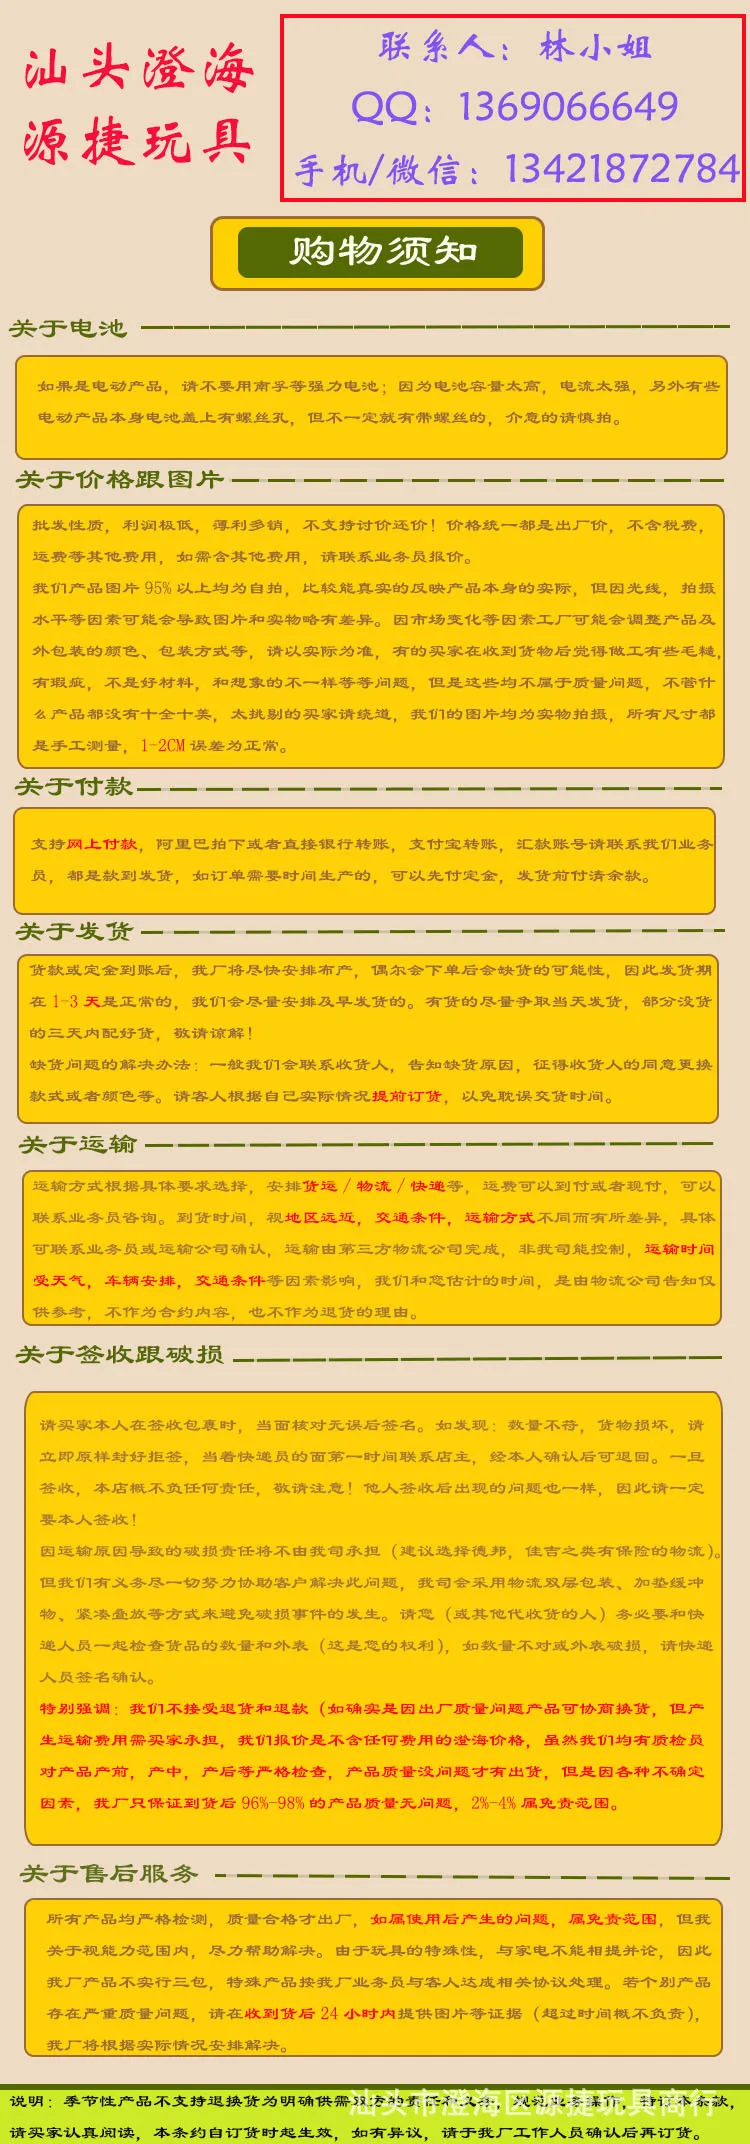 Douyin Стиль Знаменитостей Китайский Зодиак весы игрушка детский образовательный просвещение с цифрами+/-вес Математика Sca